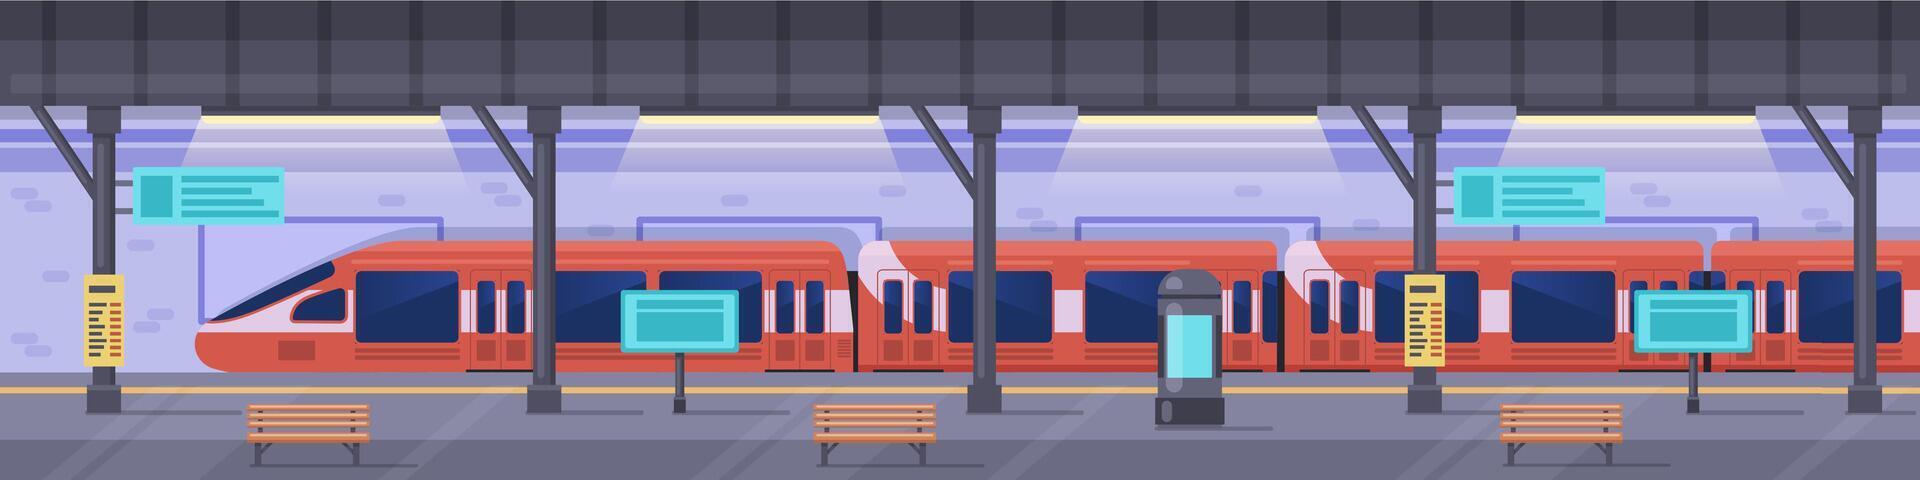 tunnelbana station. metro station plattform, tömma tunnelbana underjordisk interiör, modern storstads offentlig järnväg vektor bakgrund illustration